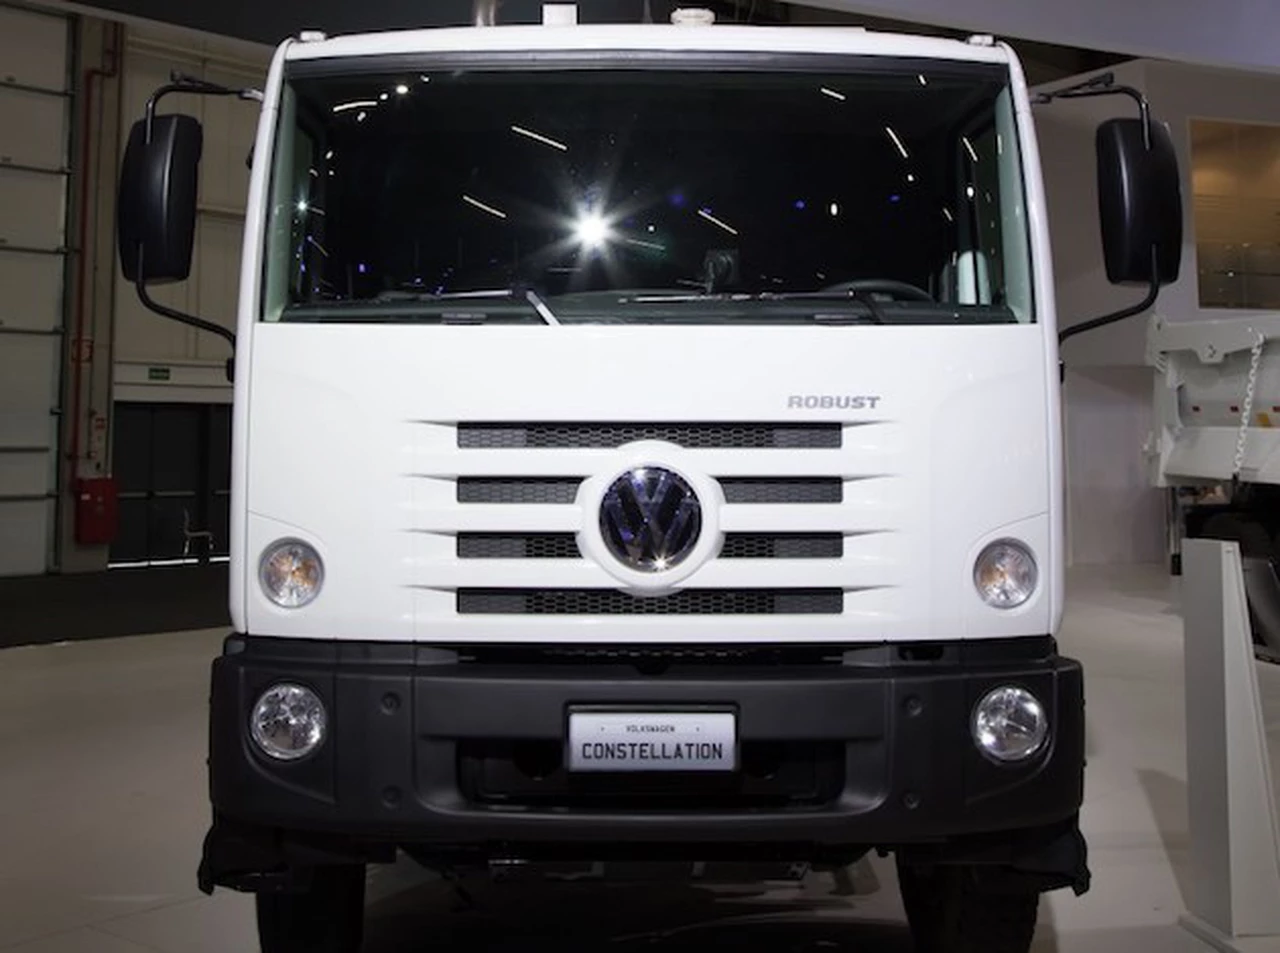 Volkswagen amplí­a la oferta de camiones con el Constellation Robust